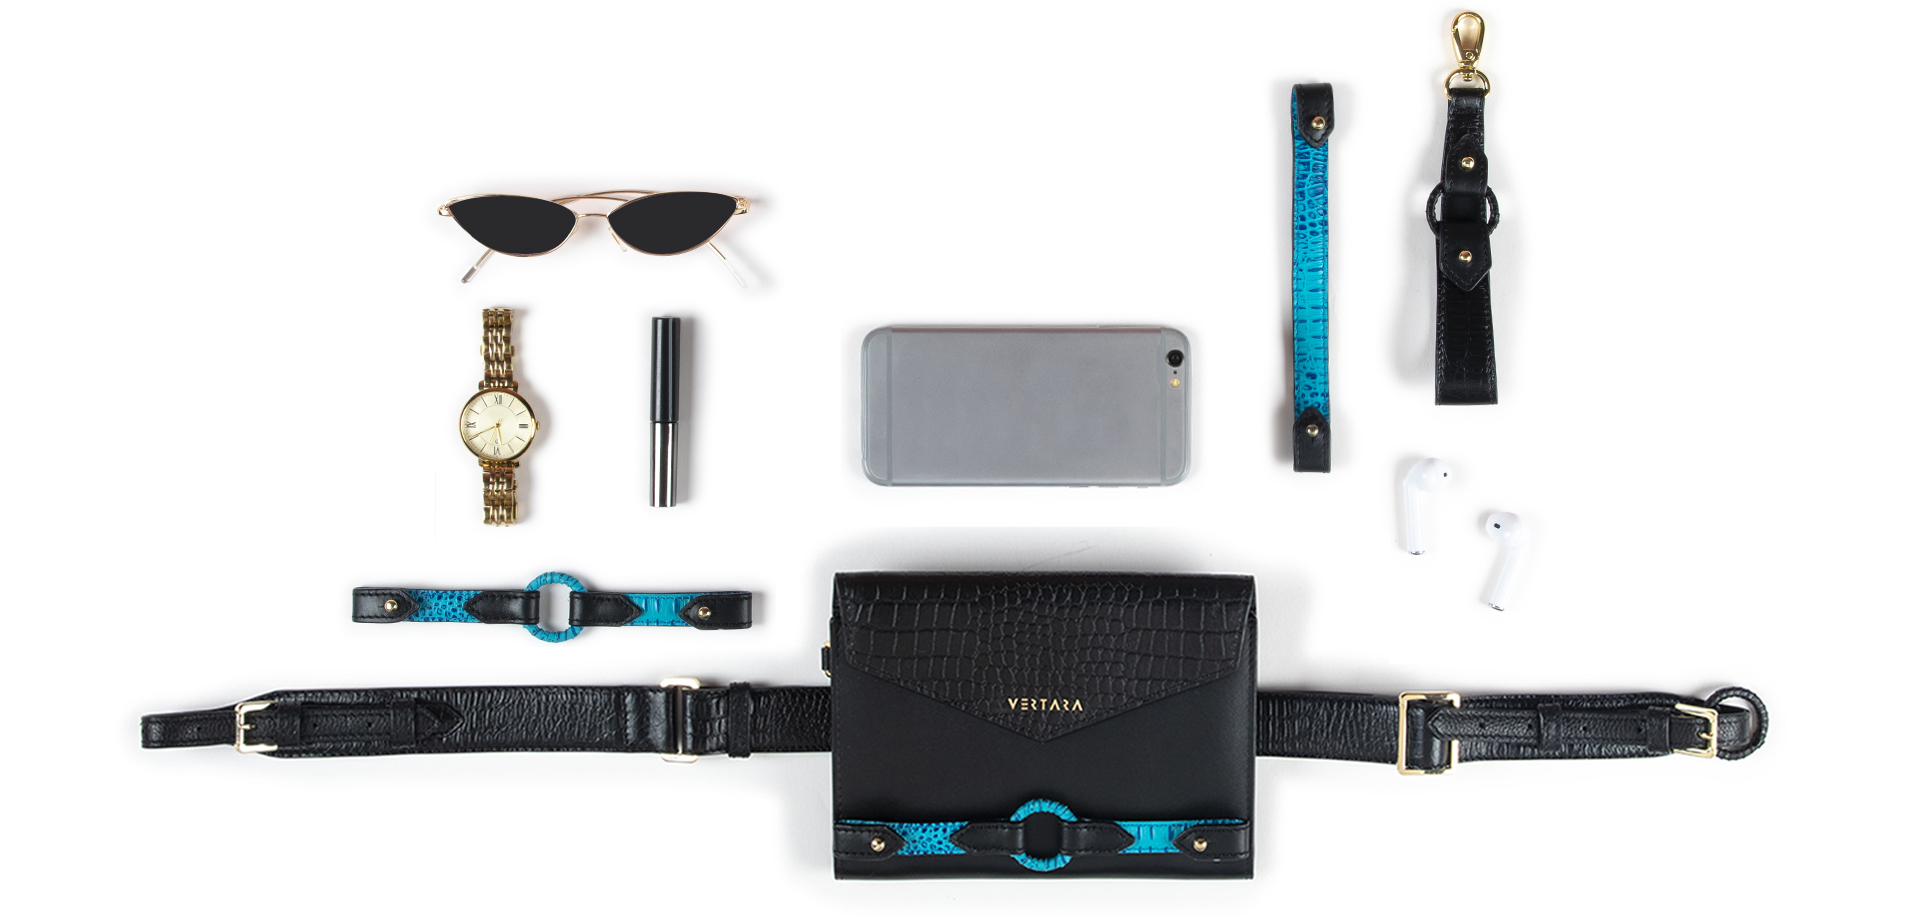 Ember Belt Bag-clutch-wallet-wristlet with Ember Bracelets in Black & Turquoise Leather fits cards, cash & phone.